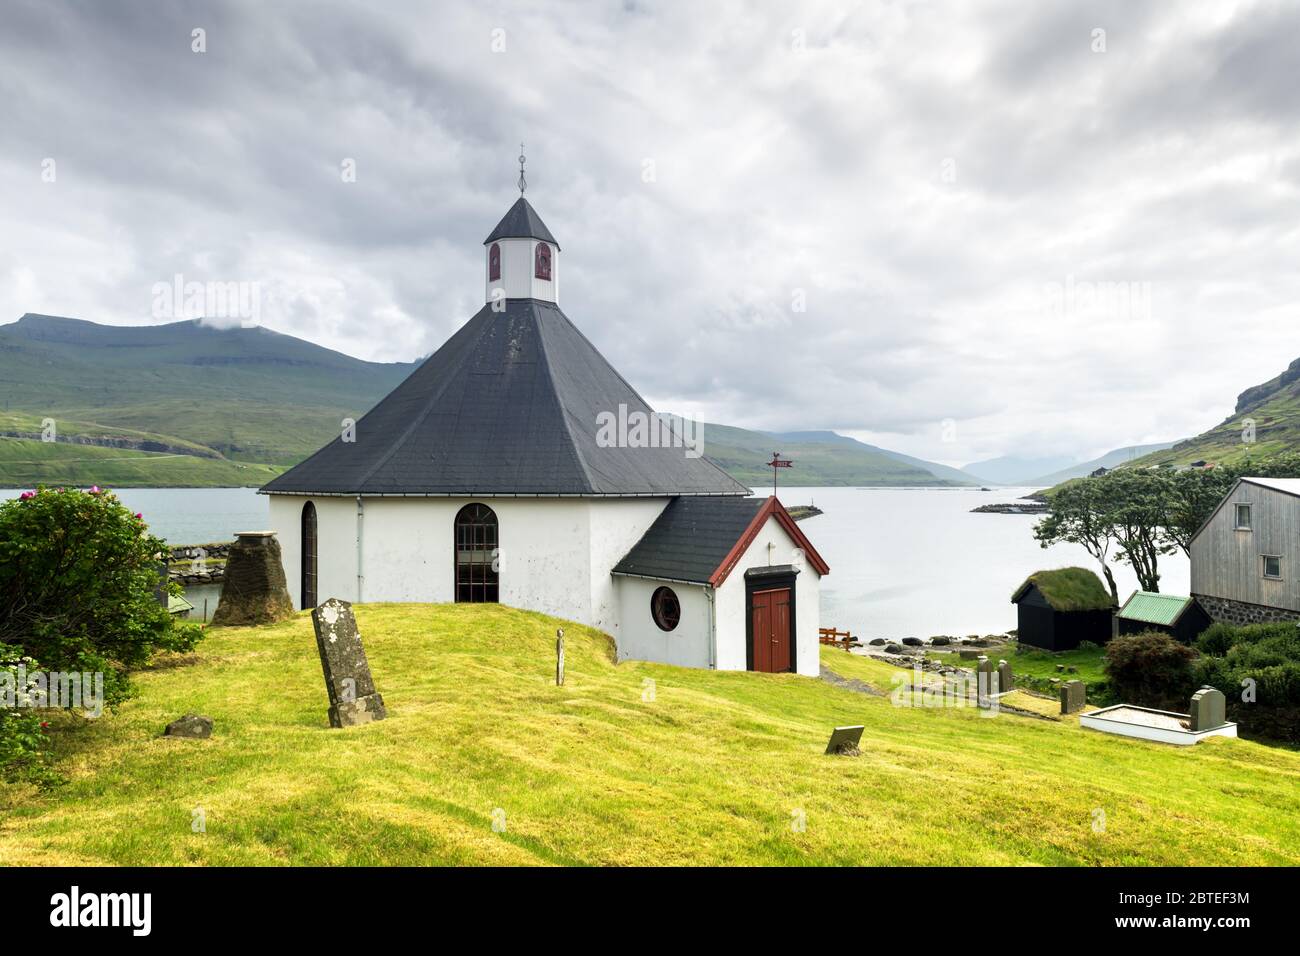 Vista estiva della chiesa tradizionale nel villaggio faroese. Paesaggio di bellezza con fiordo foggy e alte montagne. Isole Faroe, Danimarca. Foto Stock